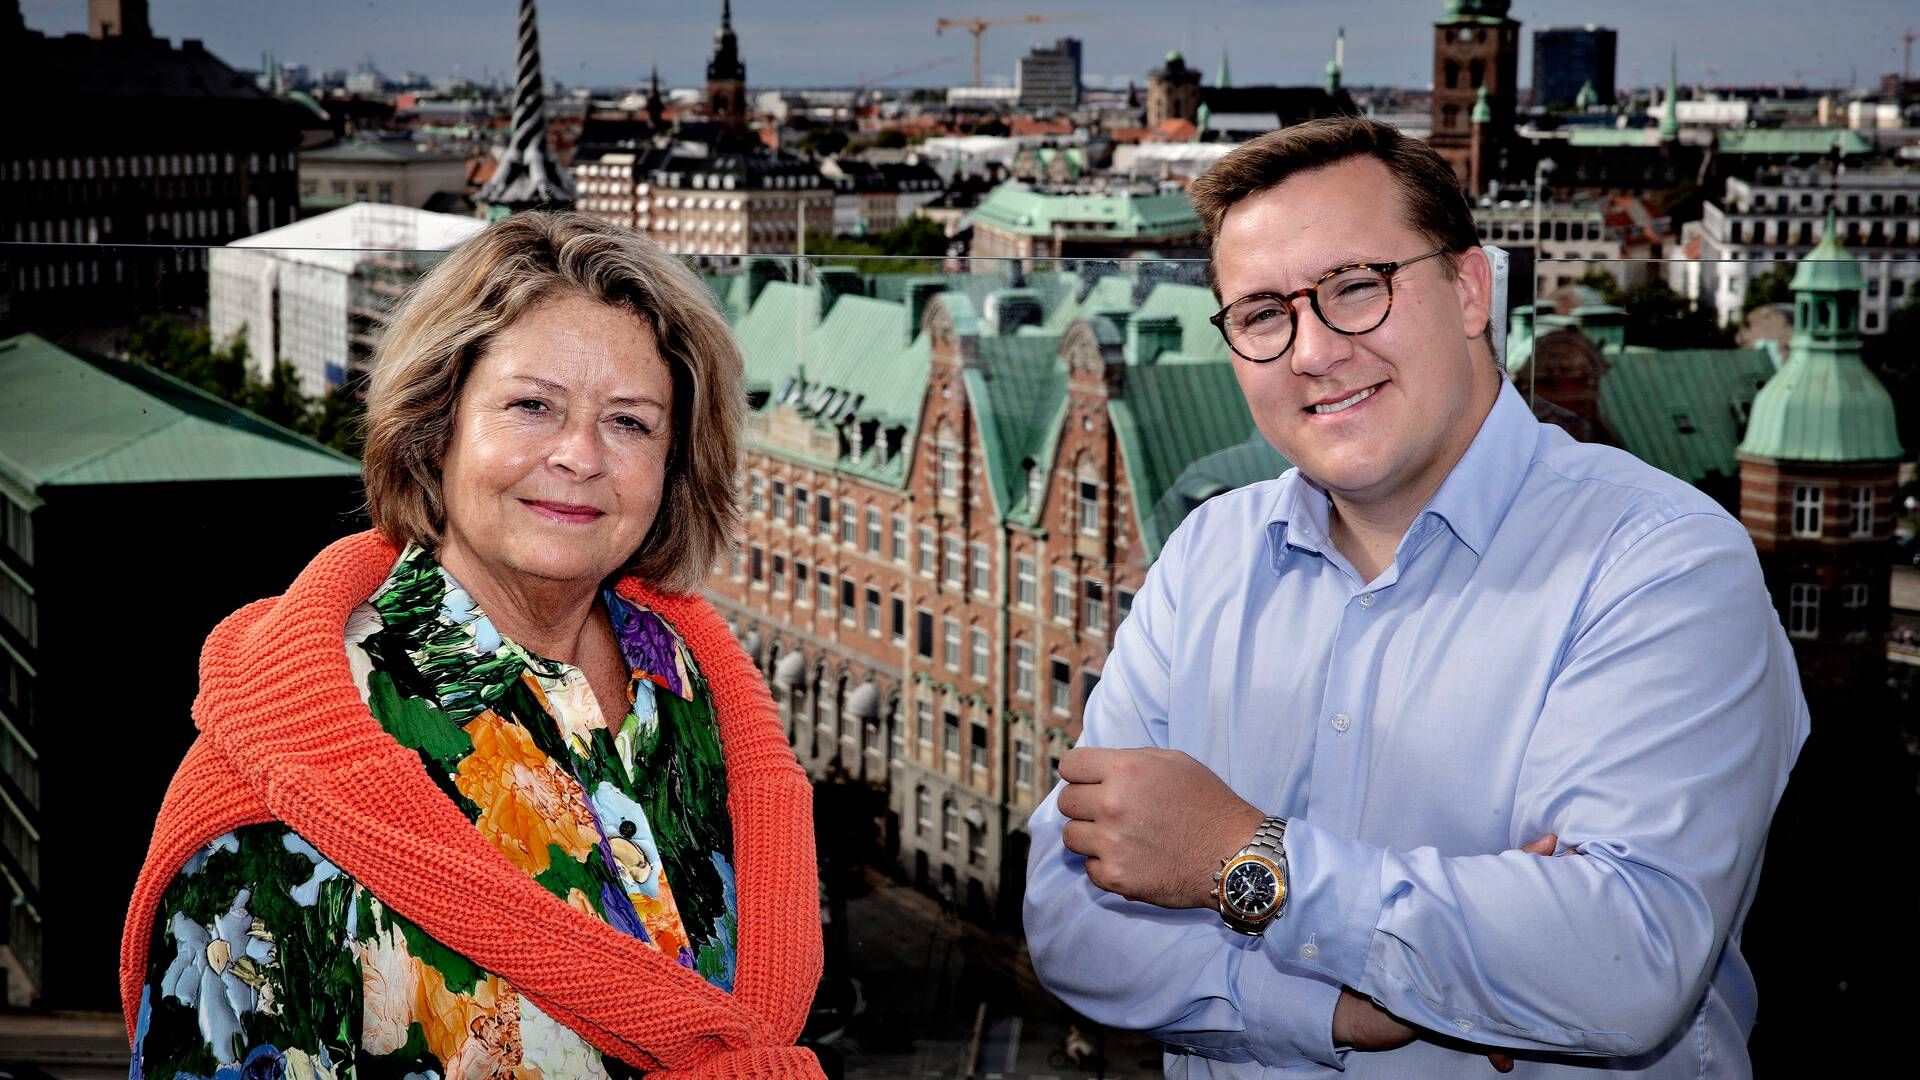 Stine Bosse og Bergur Løkke Rasmussen er spidskandidater til Europaparlamentsvalget i juni i år.